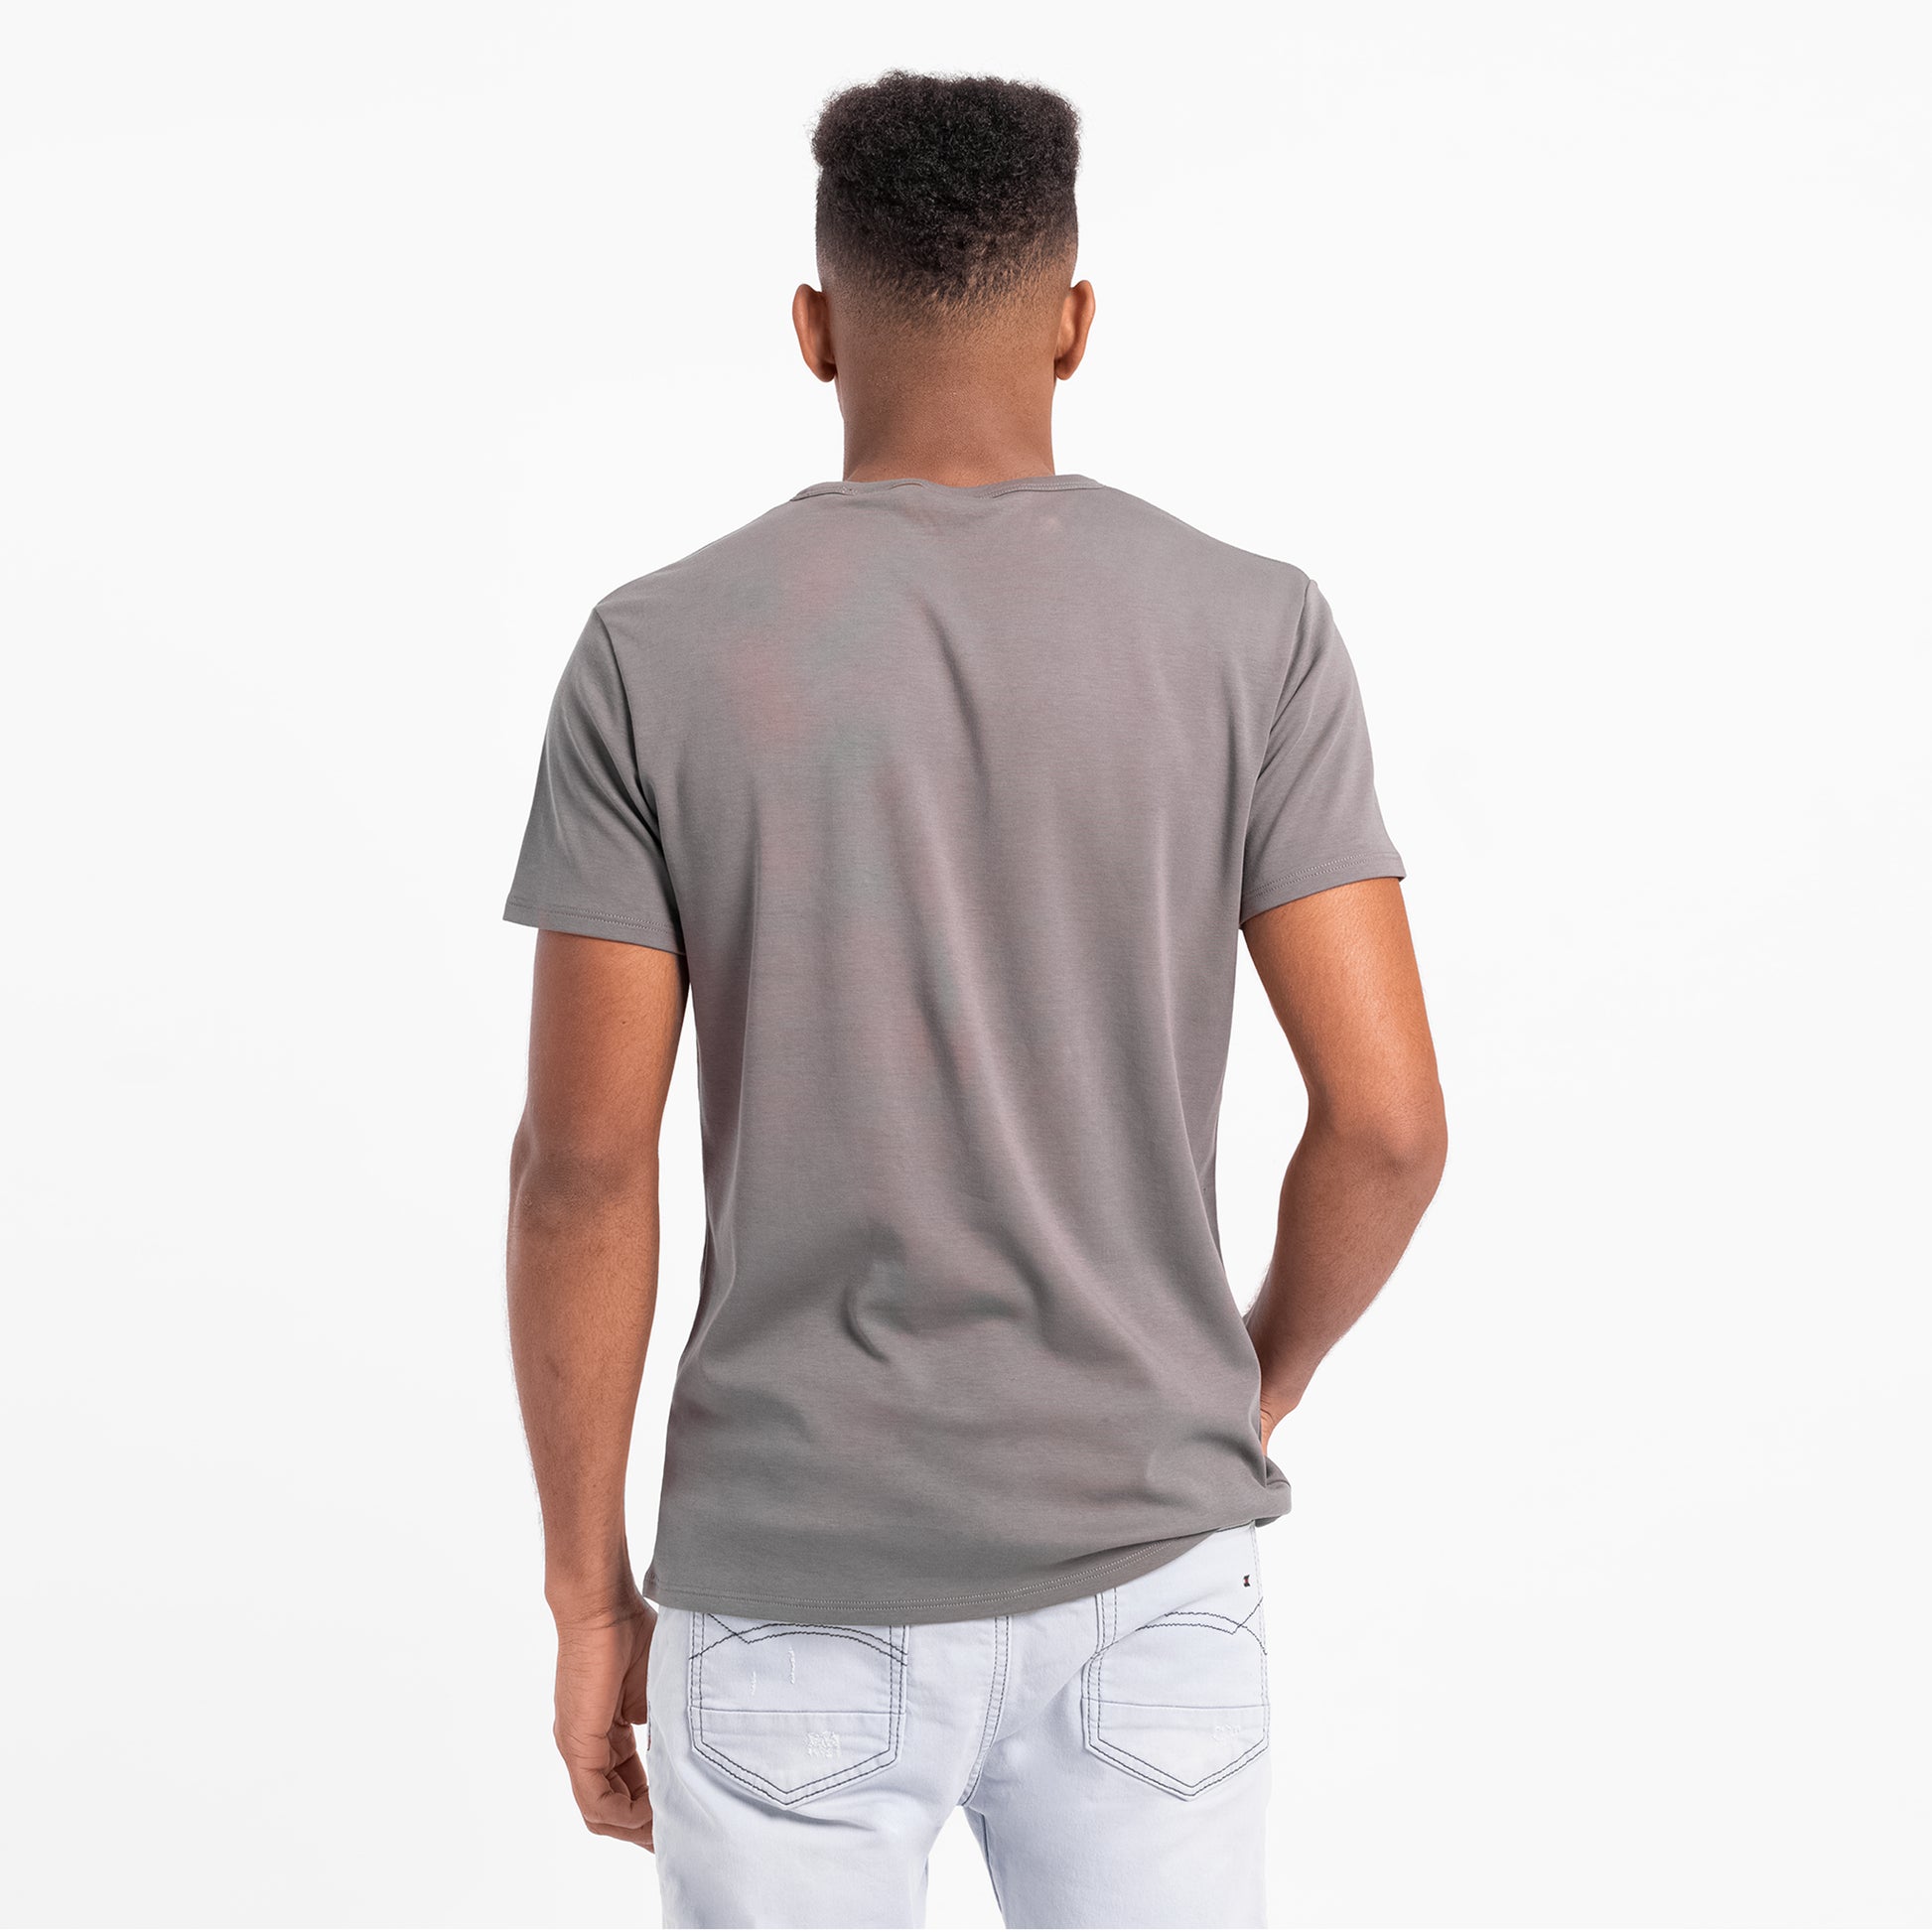 mens plastic free tshirt crew neck color natural gray